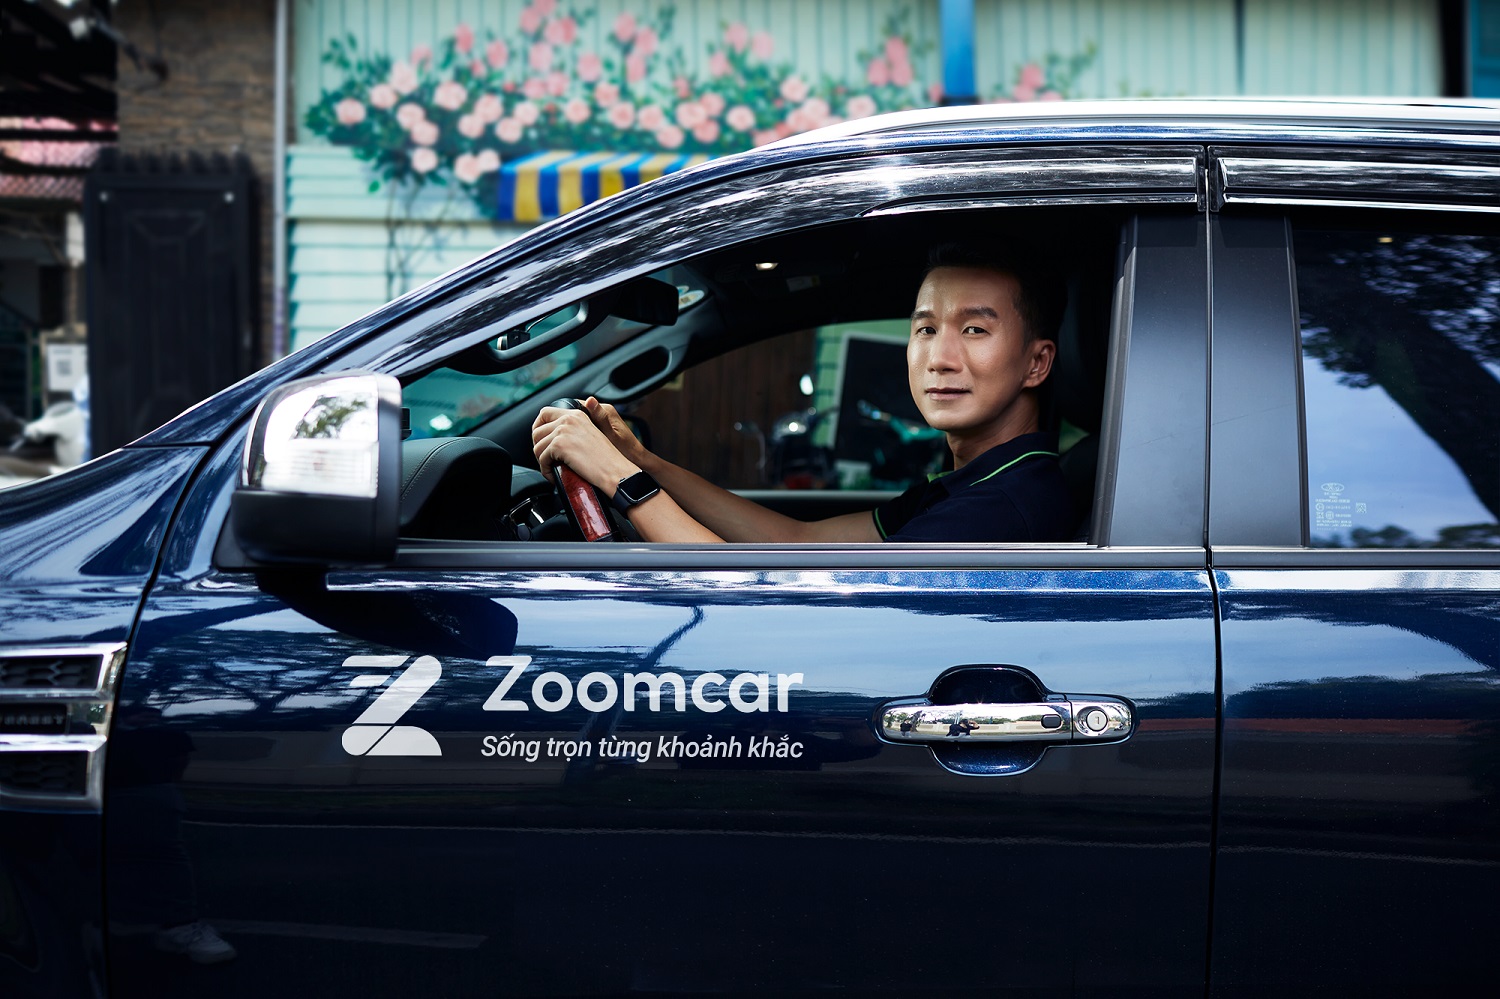 Zoomcar và PJICO ký kết hợp tác cung cấp bảo hiểm toàn diện lần đầu tiên cho dịch vụ thuê xe tự lái tại Việt Nam